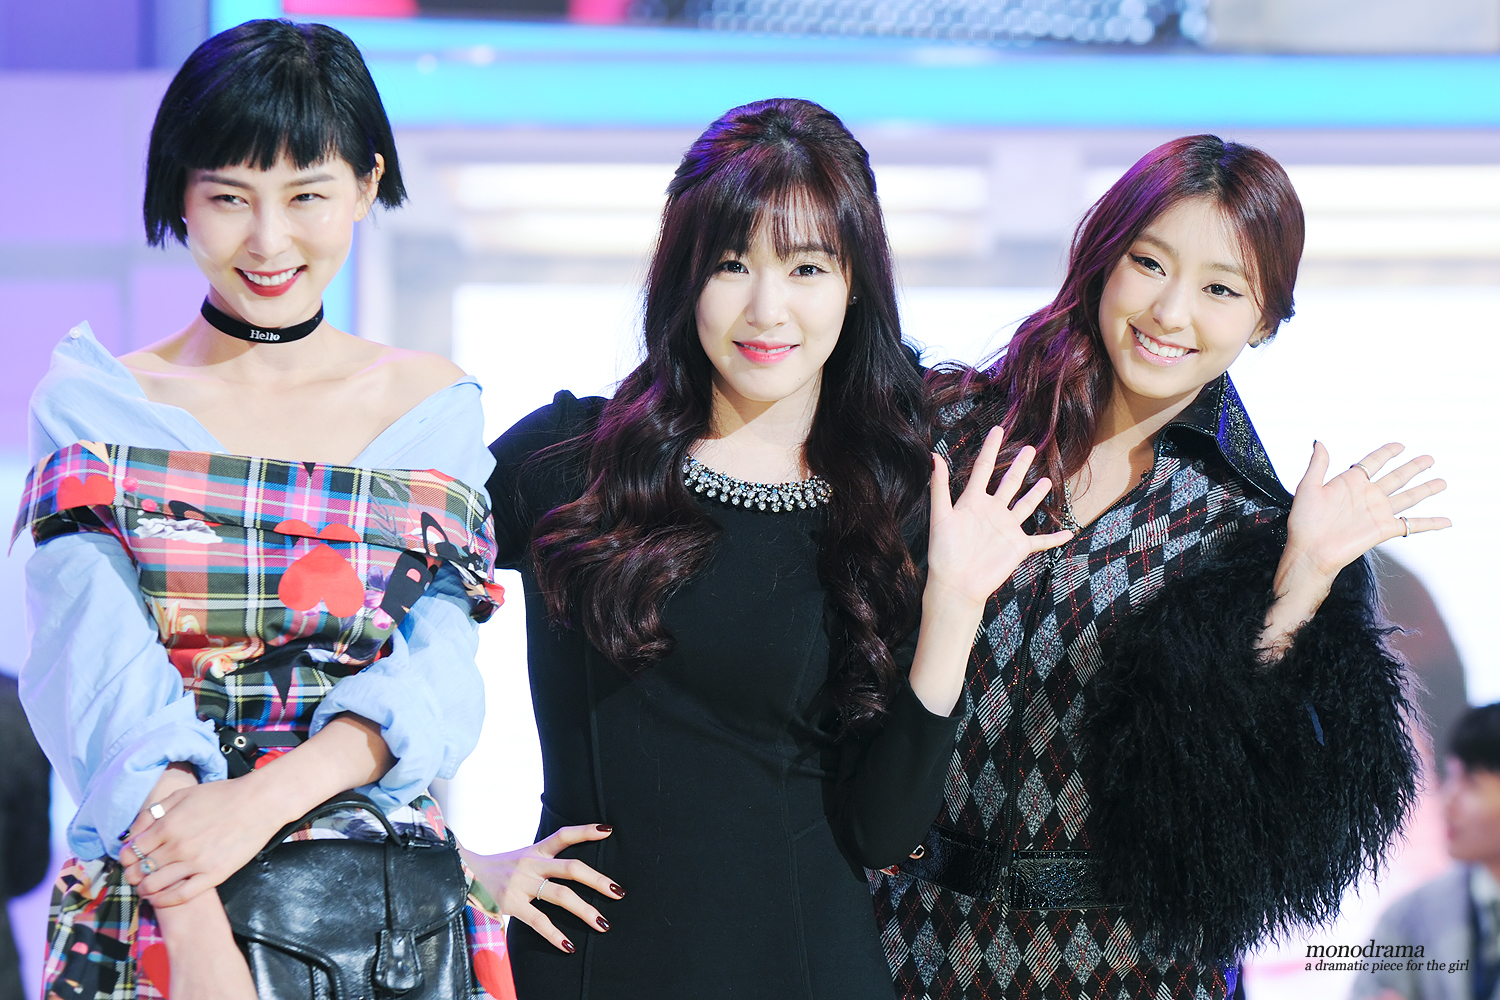 [PIC][16-10-2013]Tiffany xuất hiện tại buổi họp báo ra mắt chương trình "Fashion King Korea" vào trưa nay 2541C53F533015DA12AC69